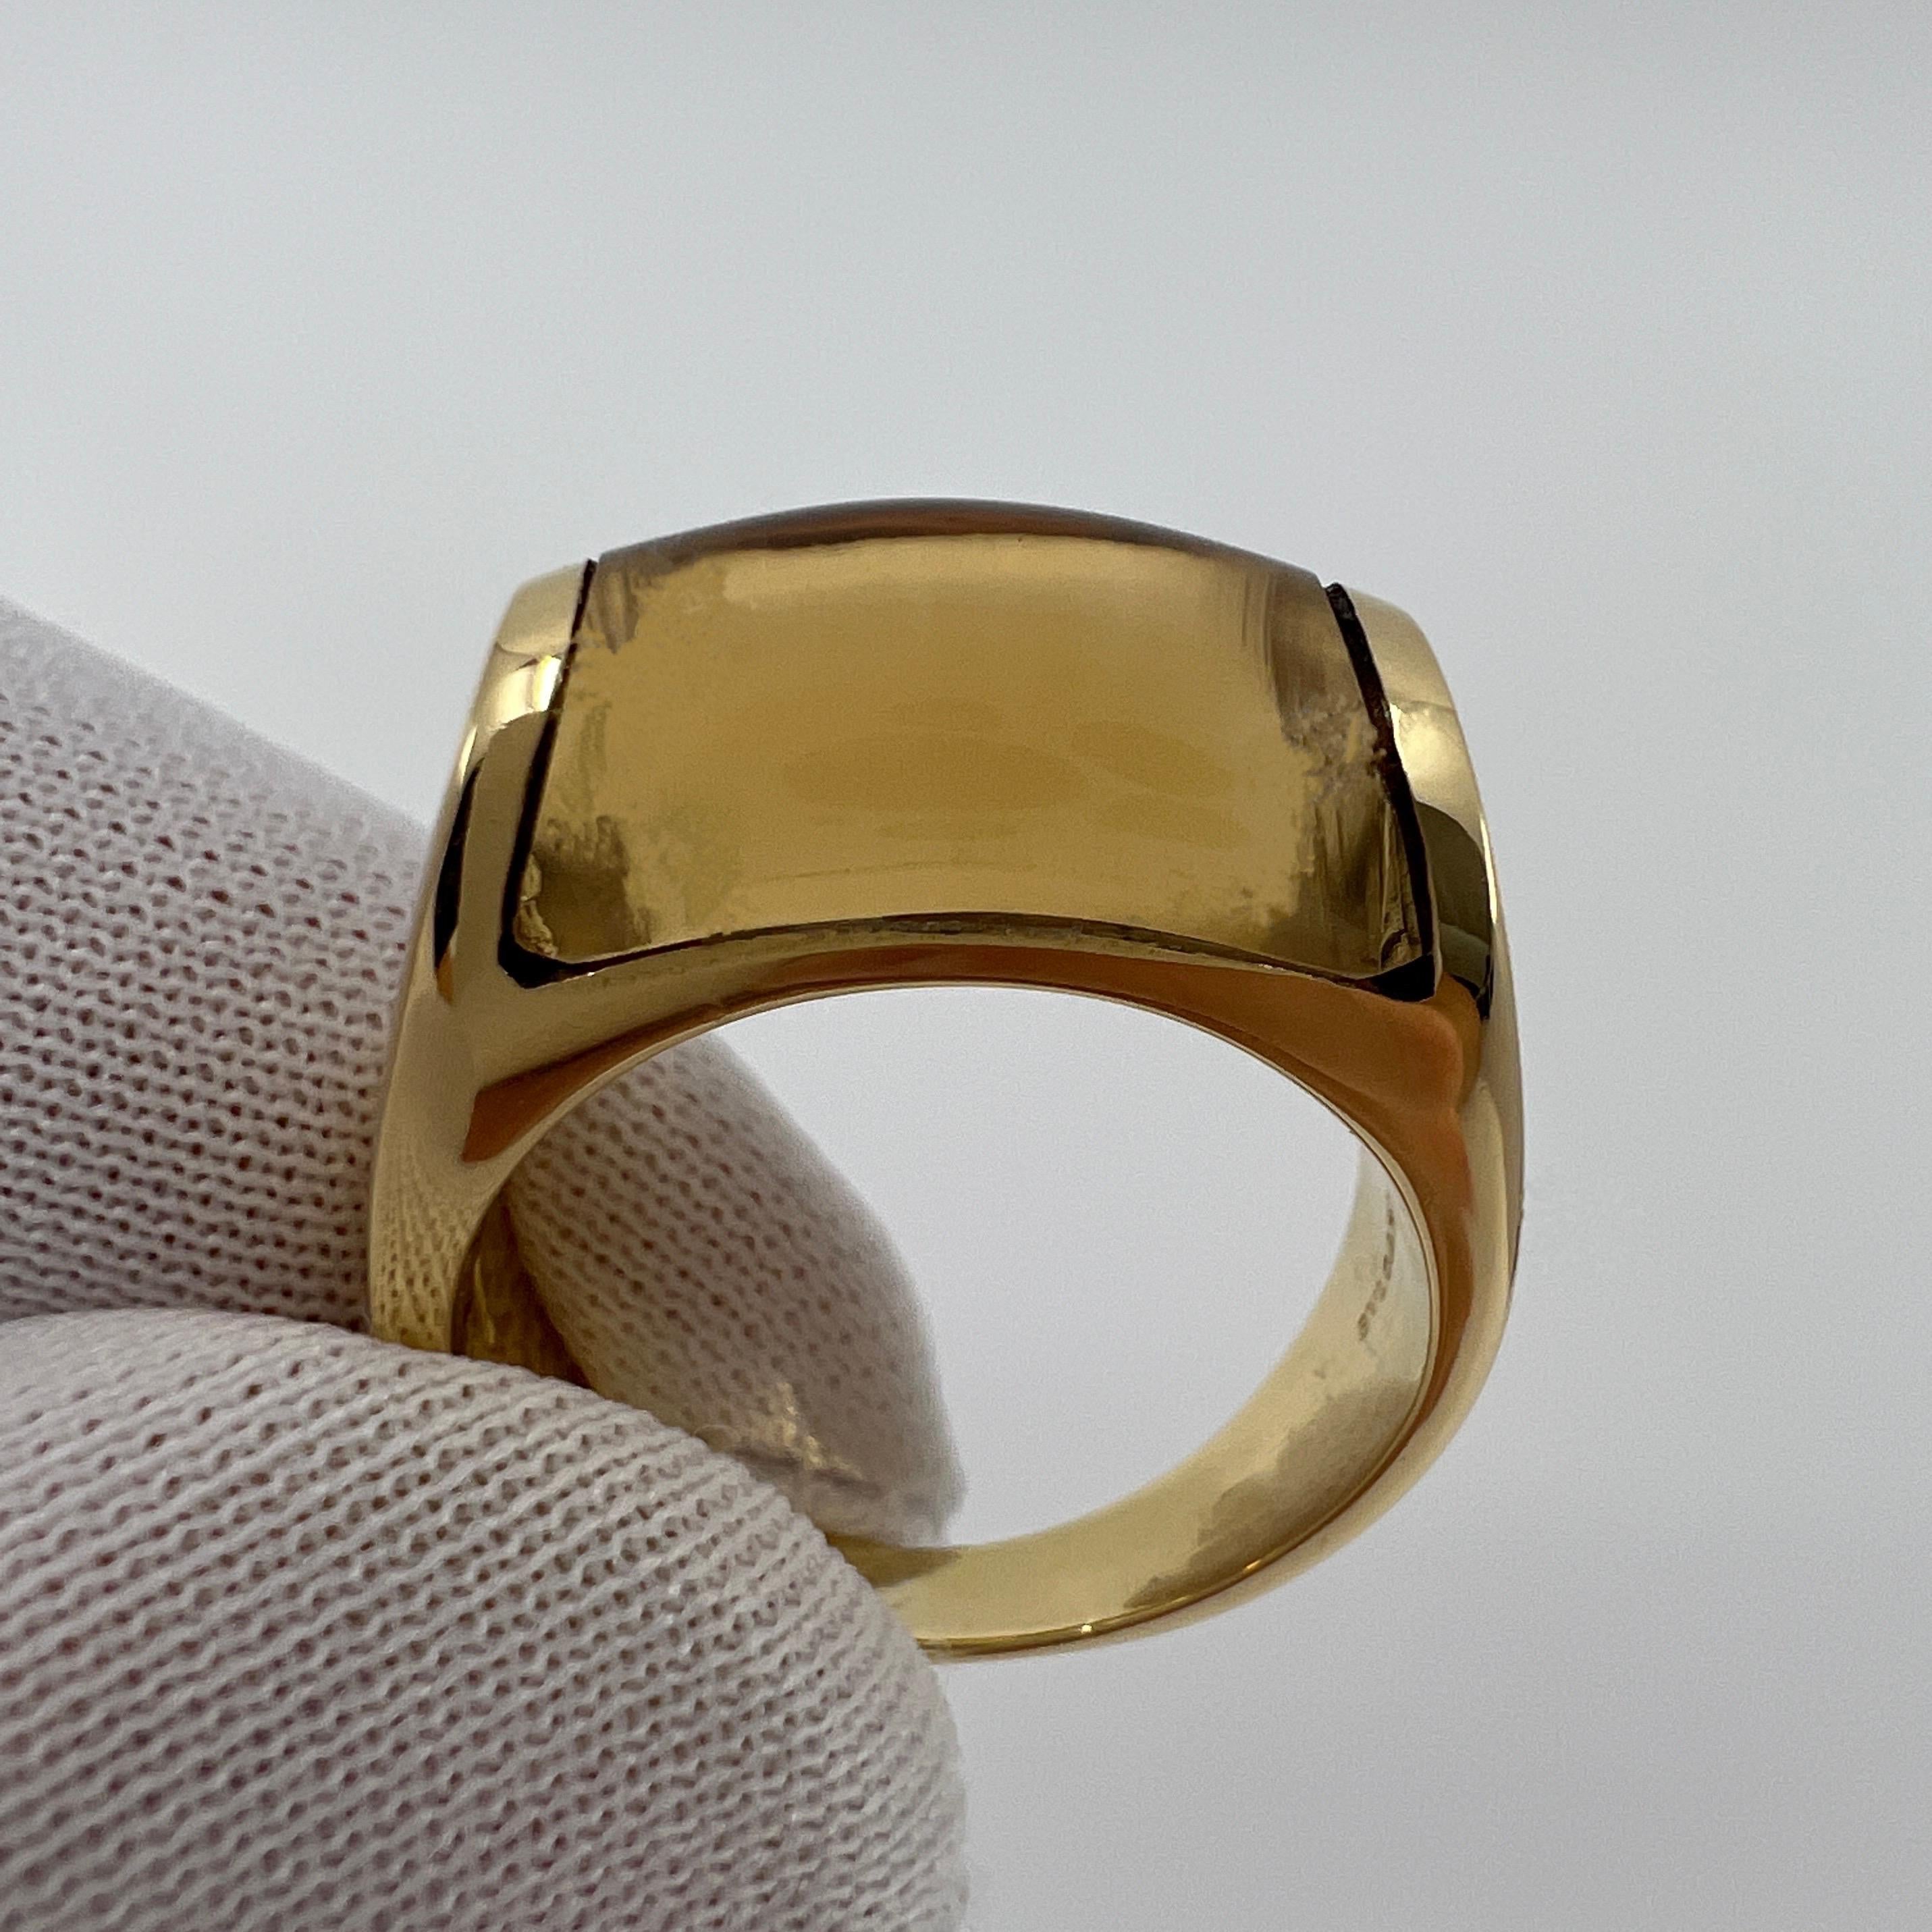 Rare Bvlgari Bulgari Tronchetto 18k Yellow Gold Yellow Citrine Ring with Box 7